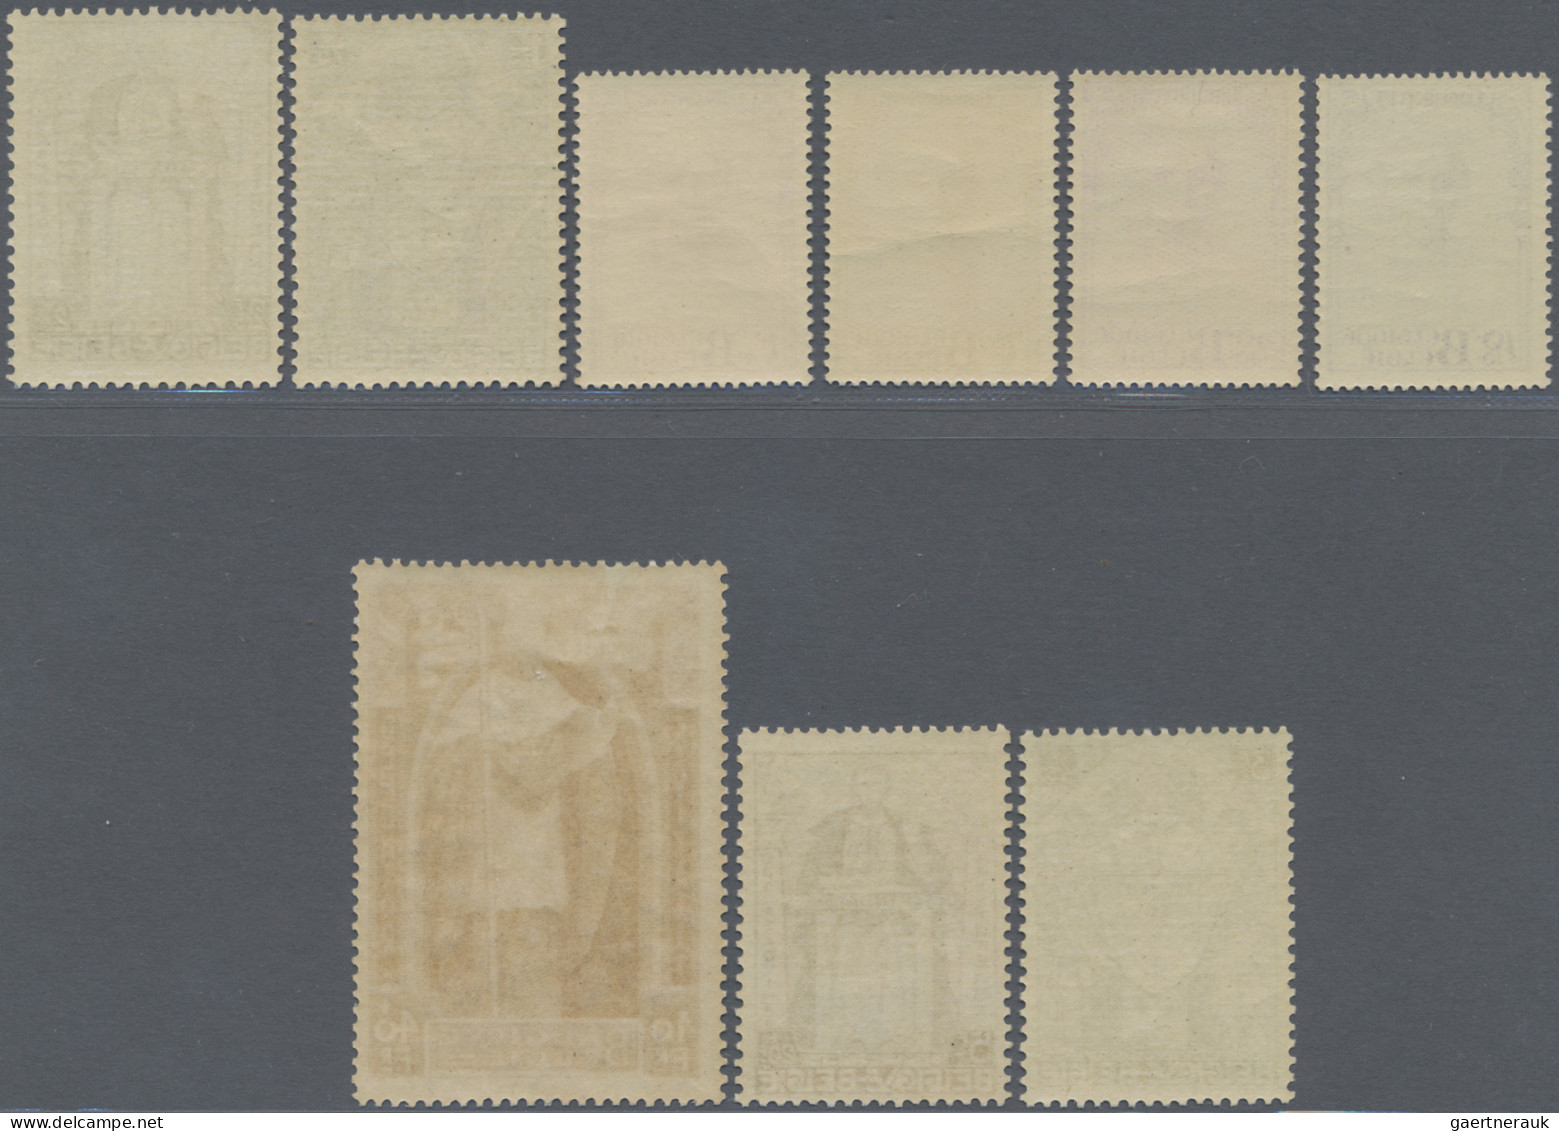 Belgium: 1932, Cardinal Mercier, Complete Set Of 9 Values, Mint Original Gum, Ce - Ongebruikt